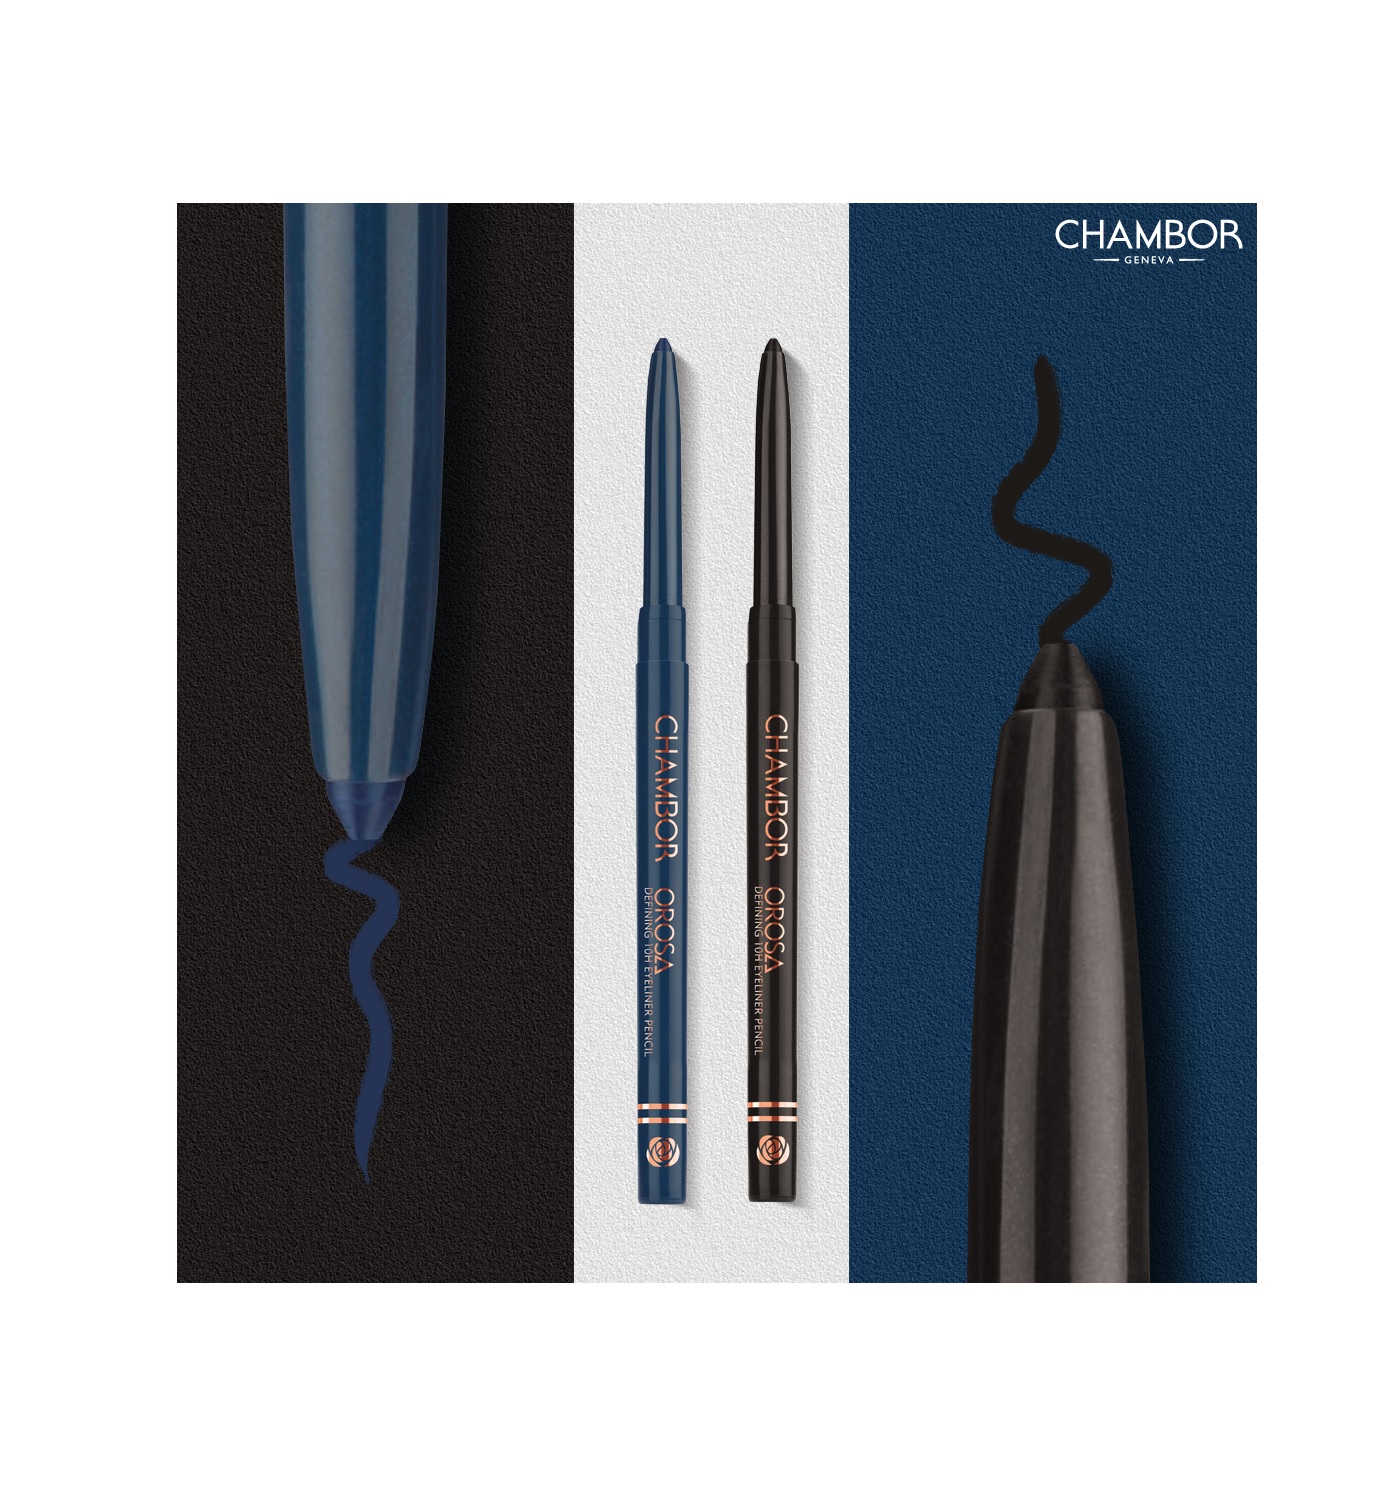 Chambor Defining 10h Eyeliner Pencil